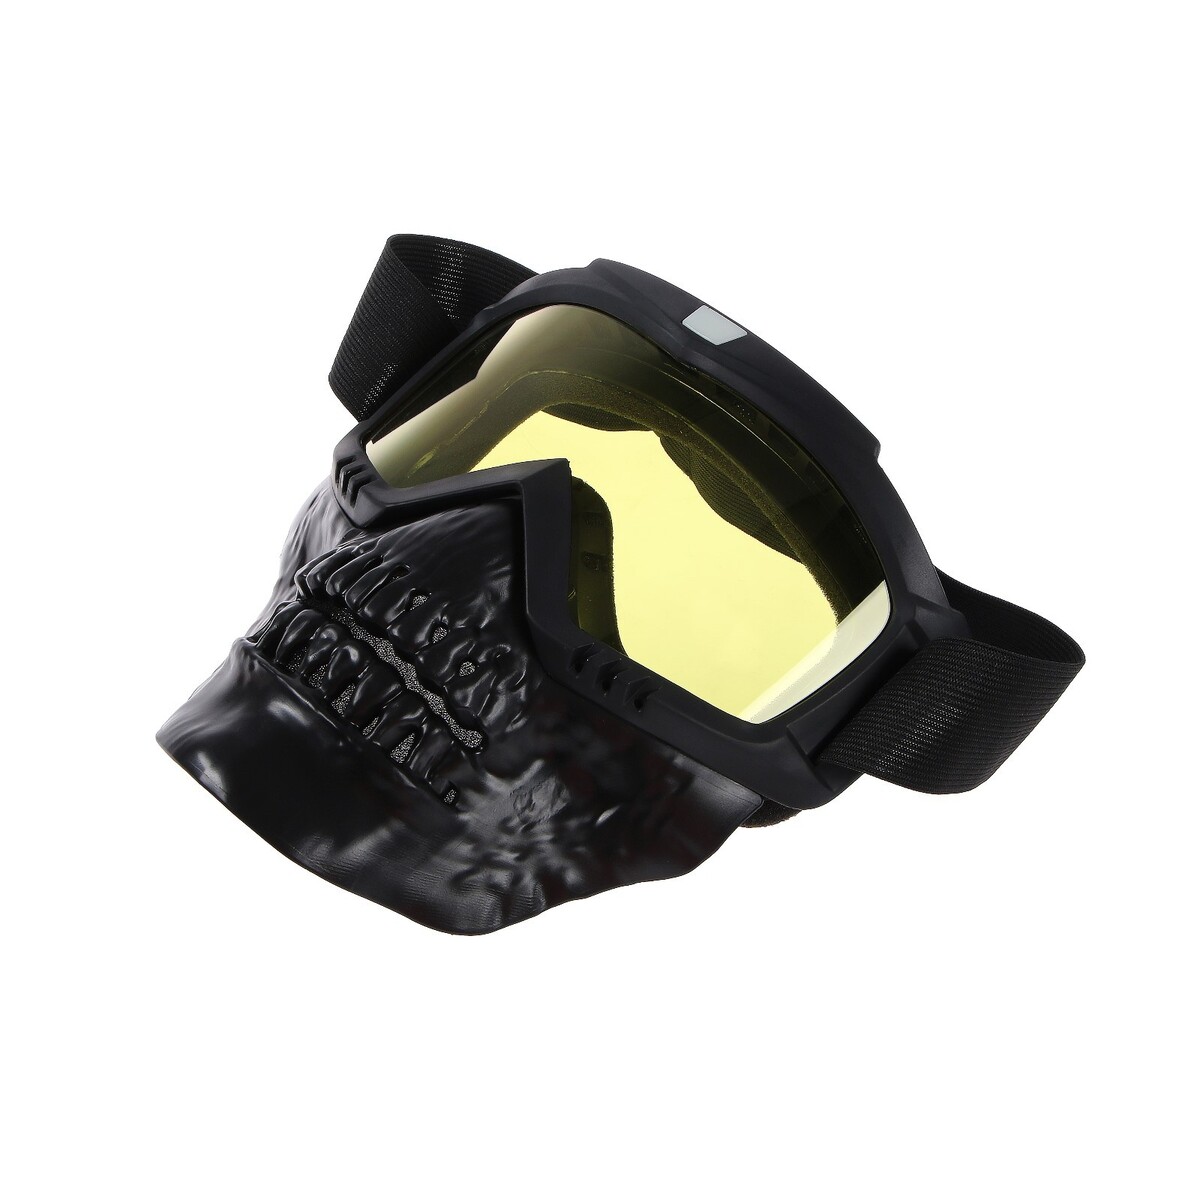 Очки-маска для езды на мототехнике, разборные, визор желтый, цвет черный очки маска для езды на мототехнике разборные стекло оранжевый хром